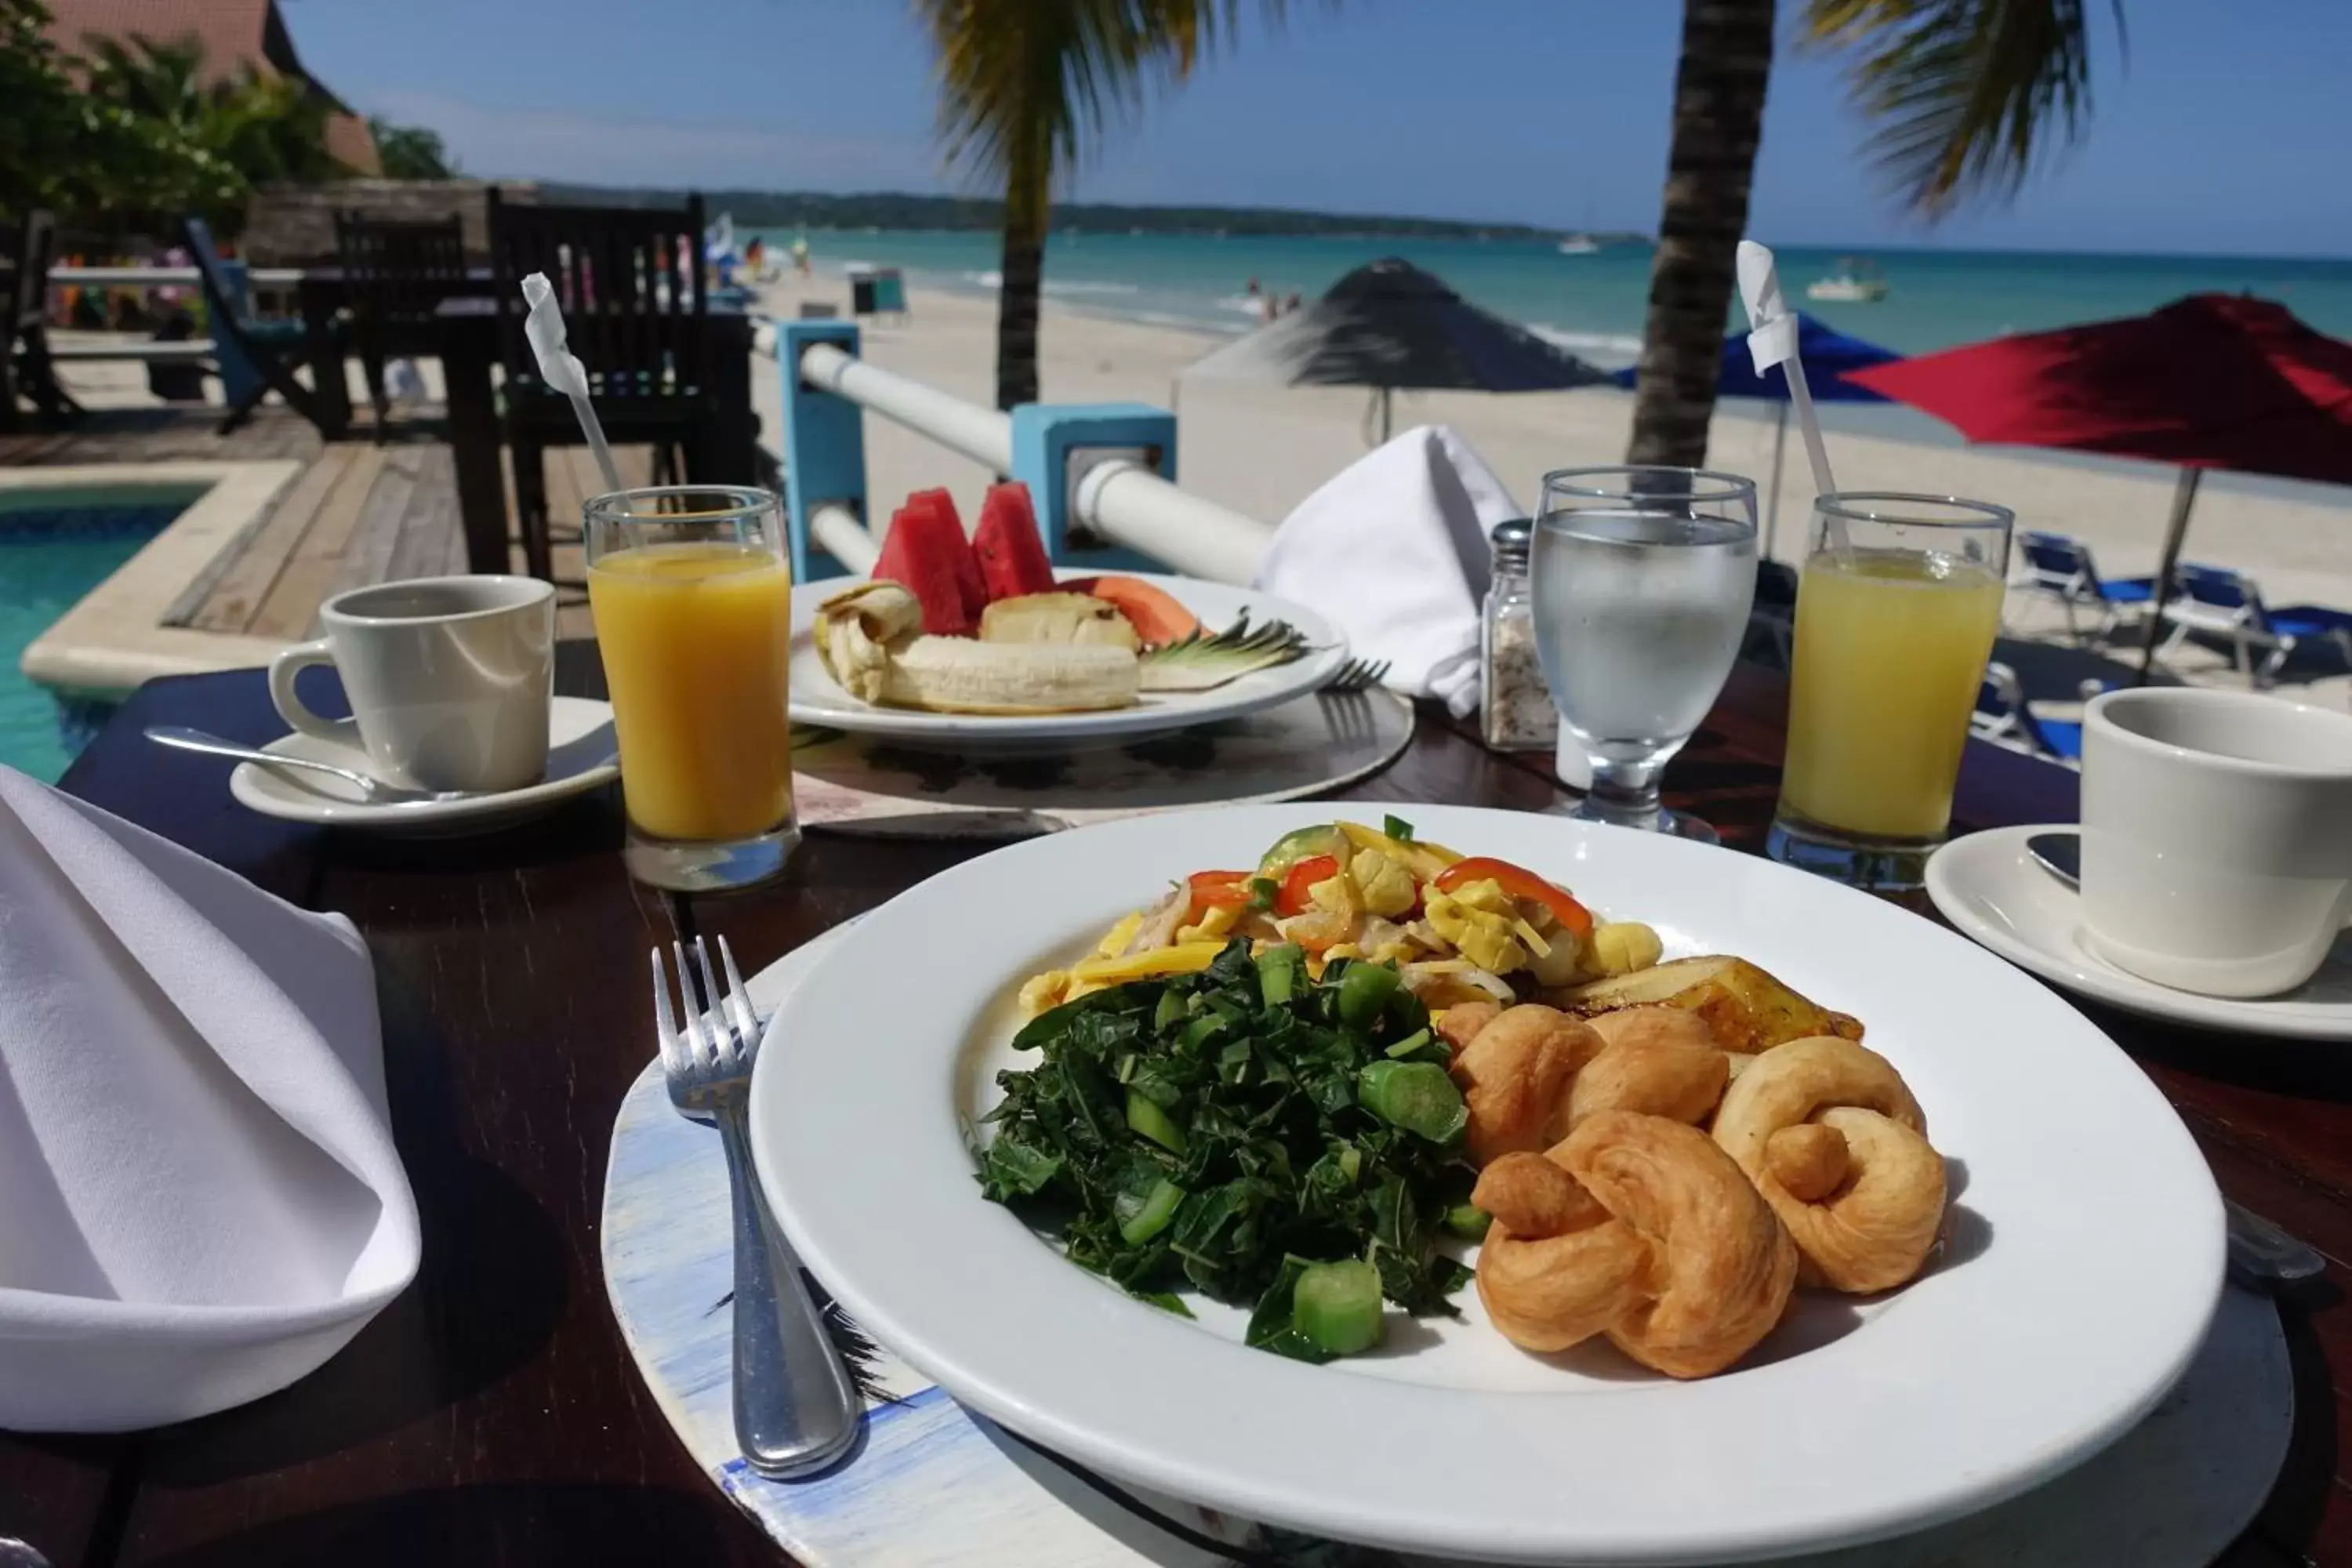 Breakfast in Negril Palms